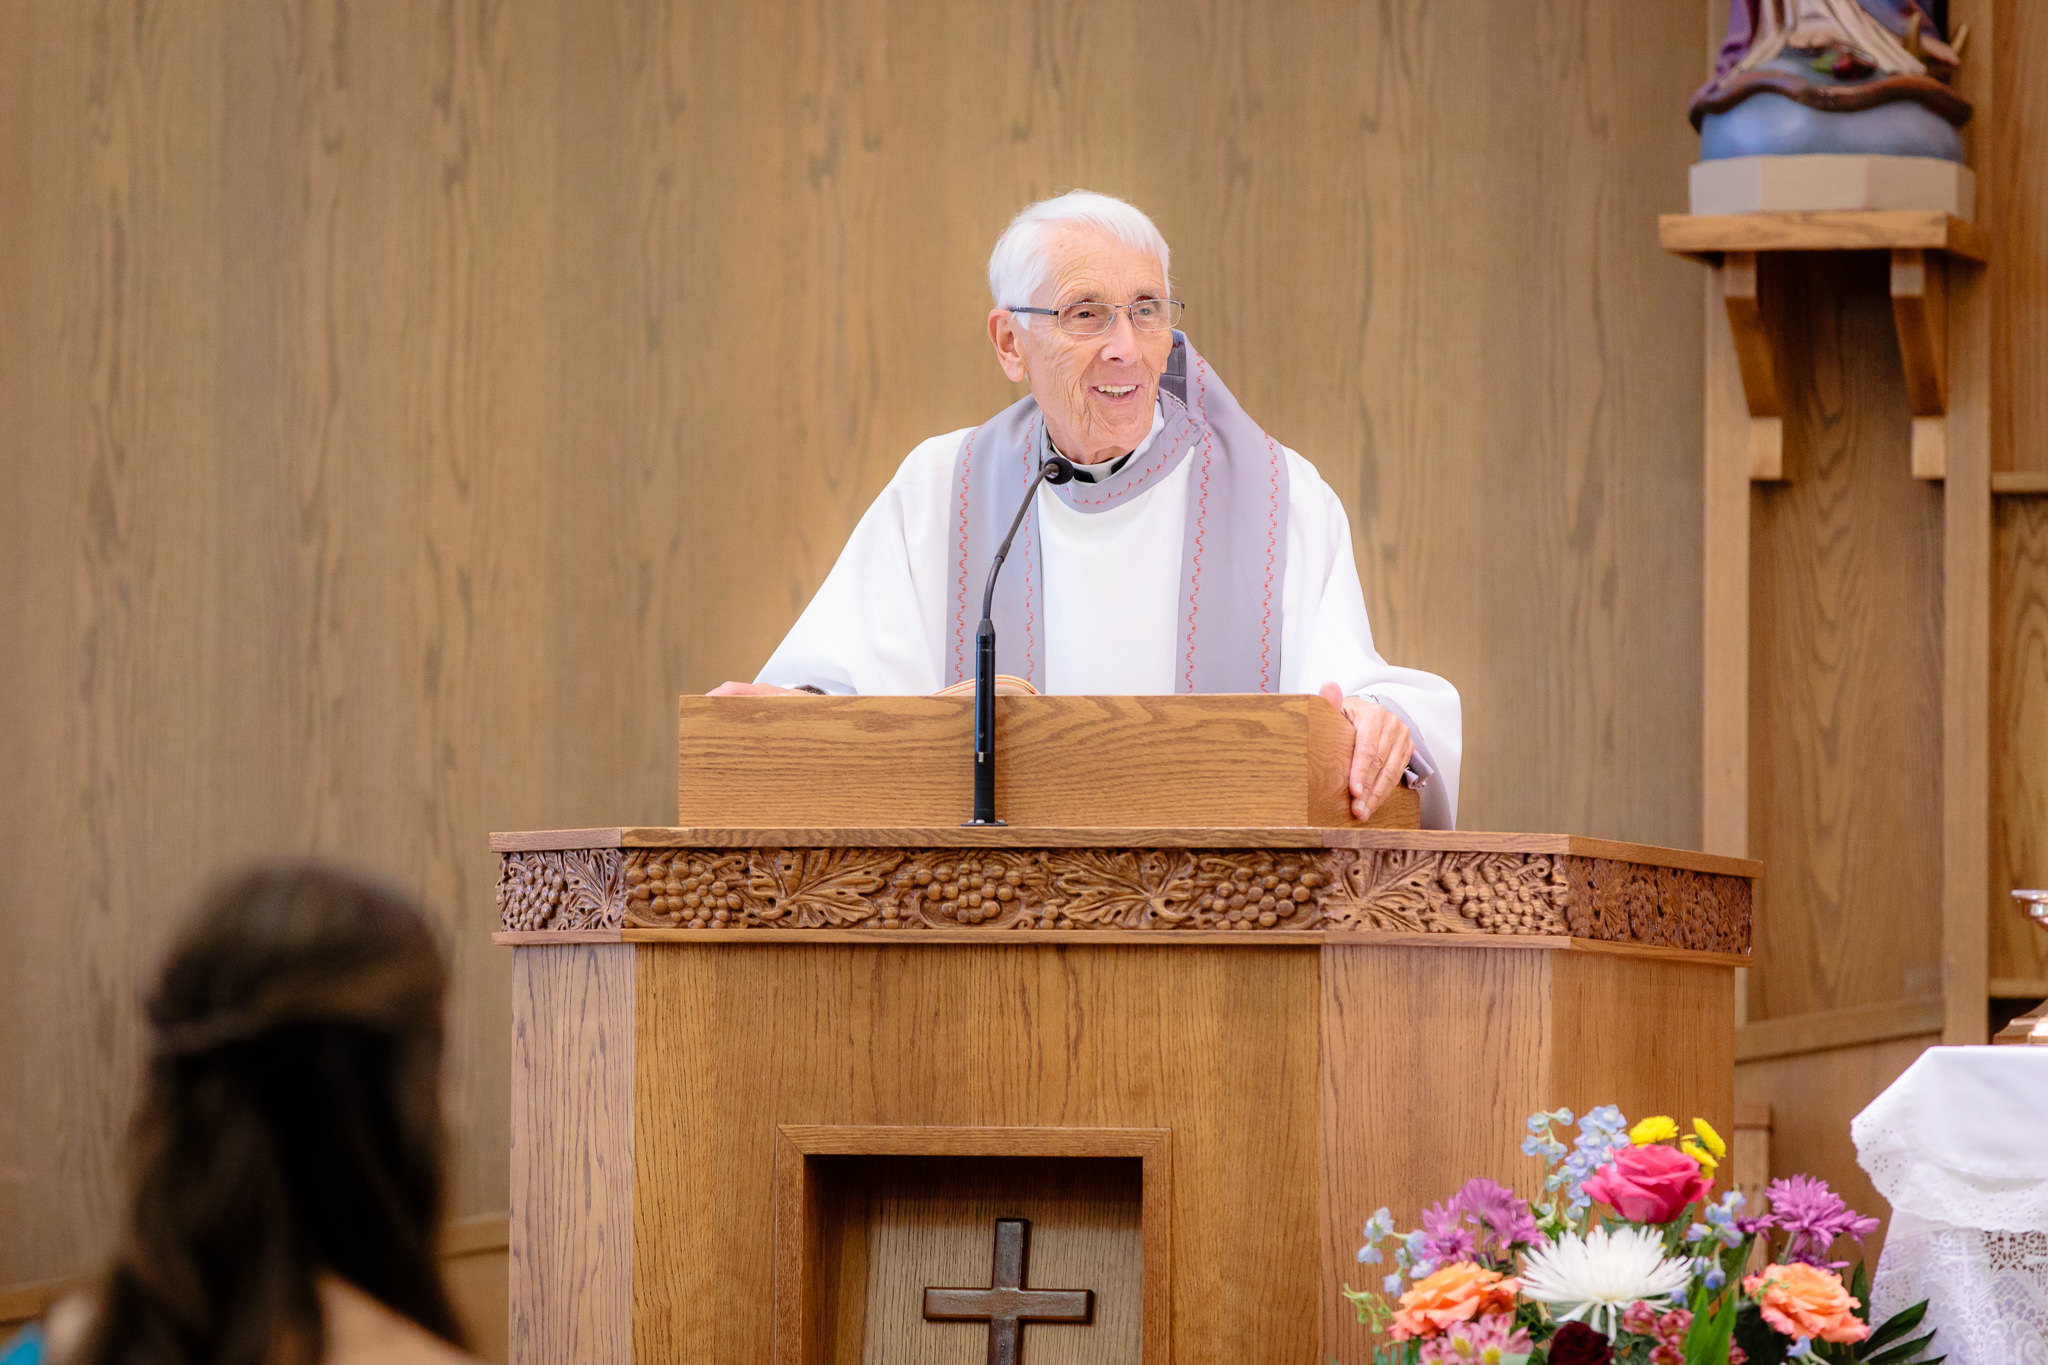 Fr. William Schwartz speaks at a wedding ceremony at Saint Monica Parish